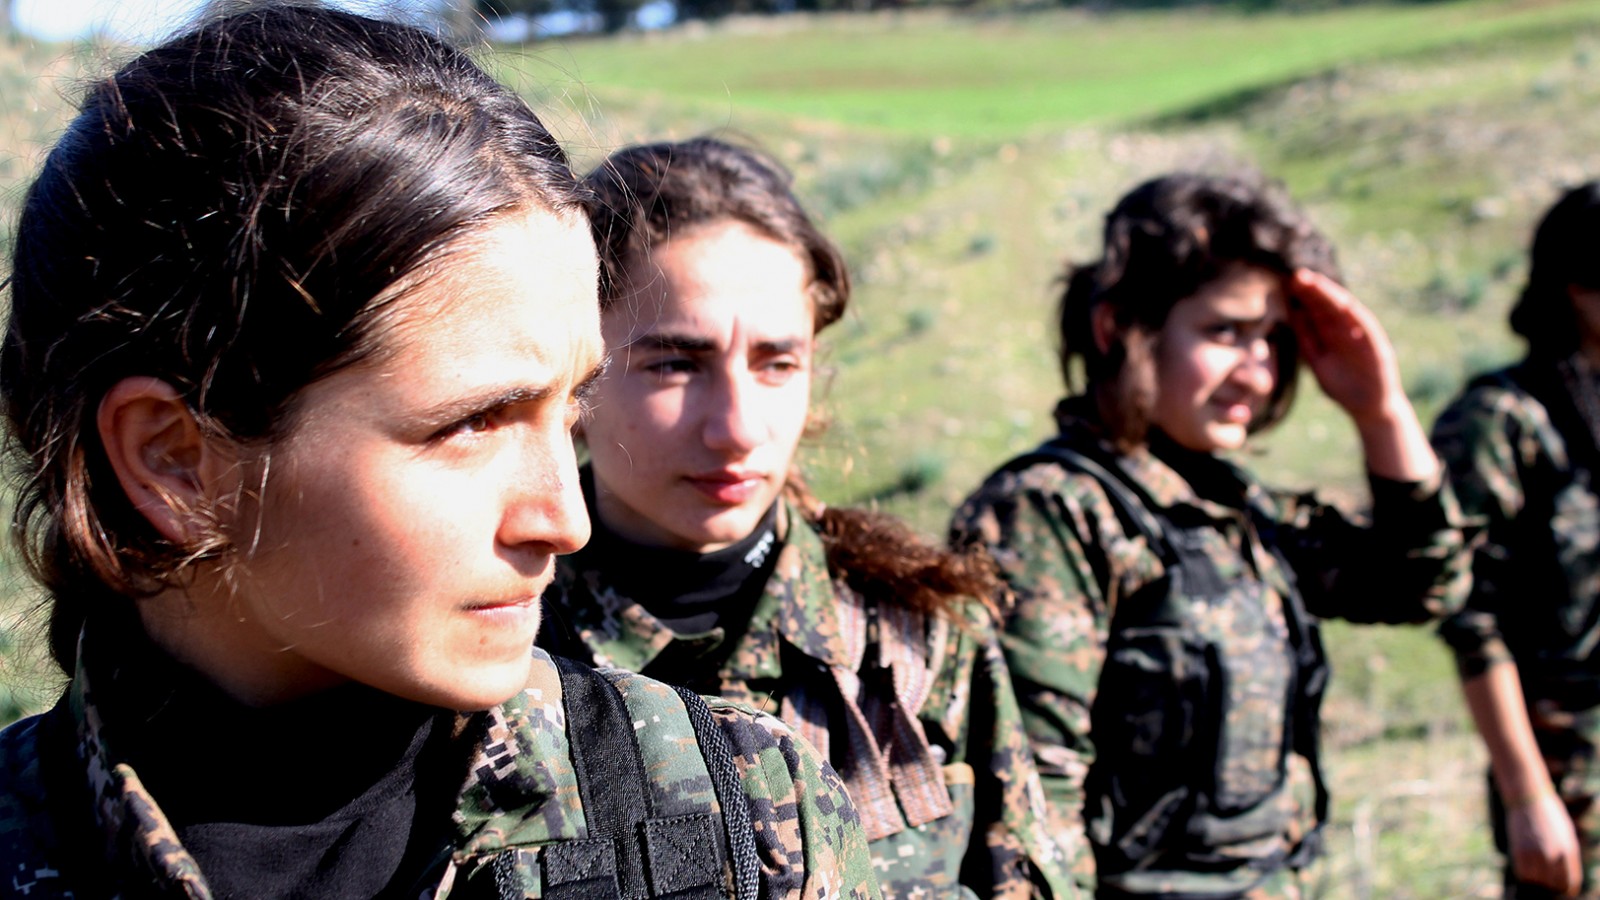 לוחמות כורדיות במחתרת הכורדית (צילום: Kurdishstruggle / flickr).